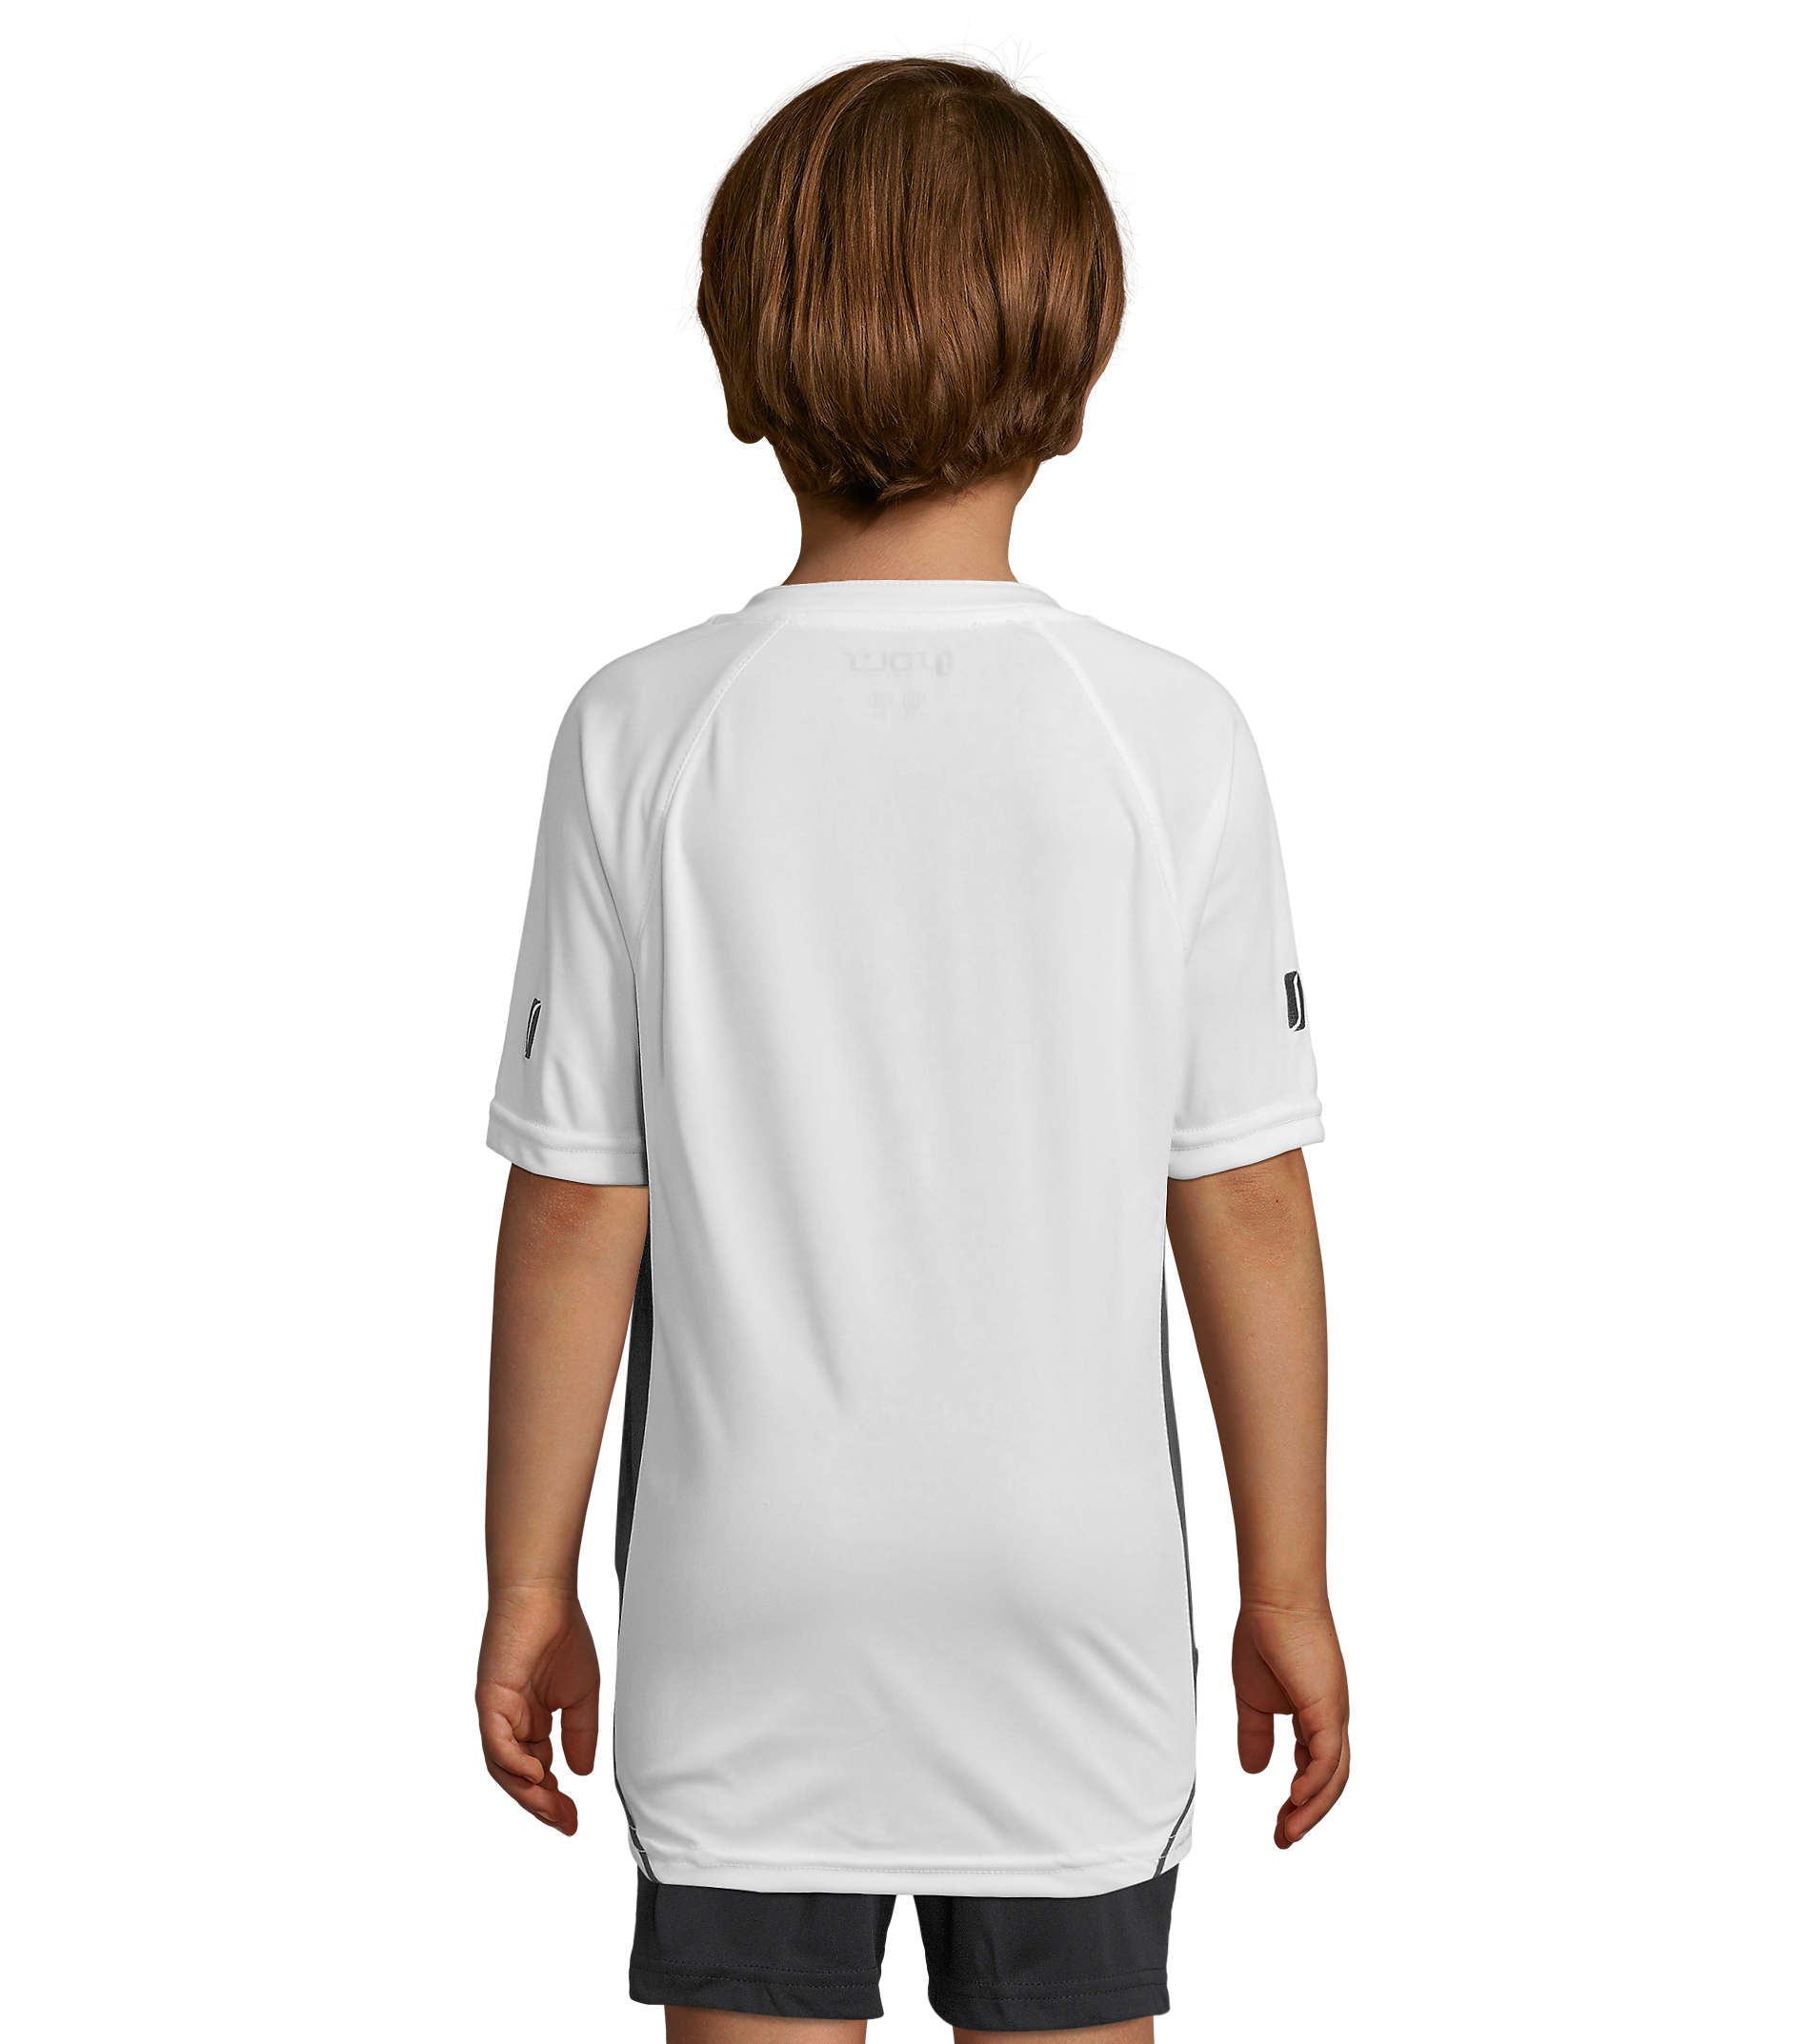 Maracana 2 Kids SSL T-Shirt